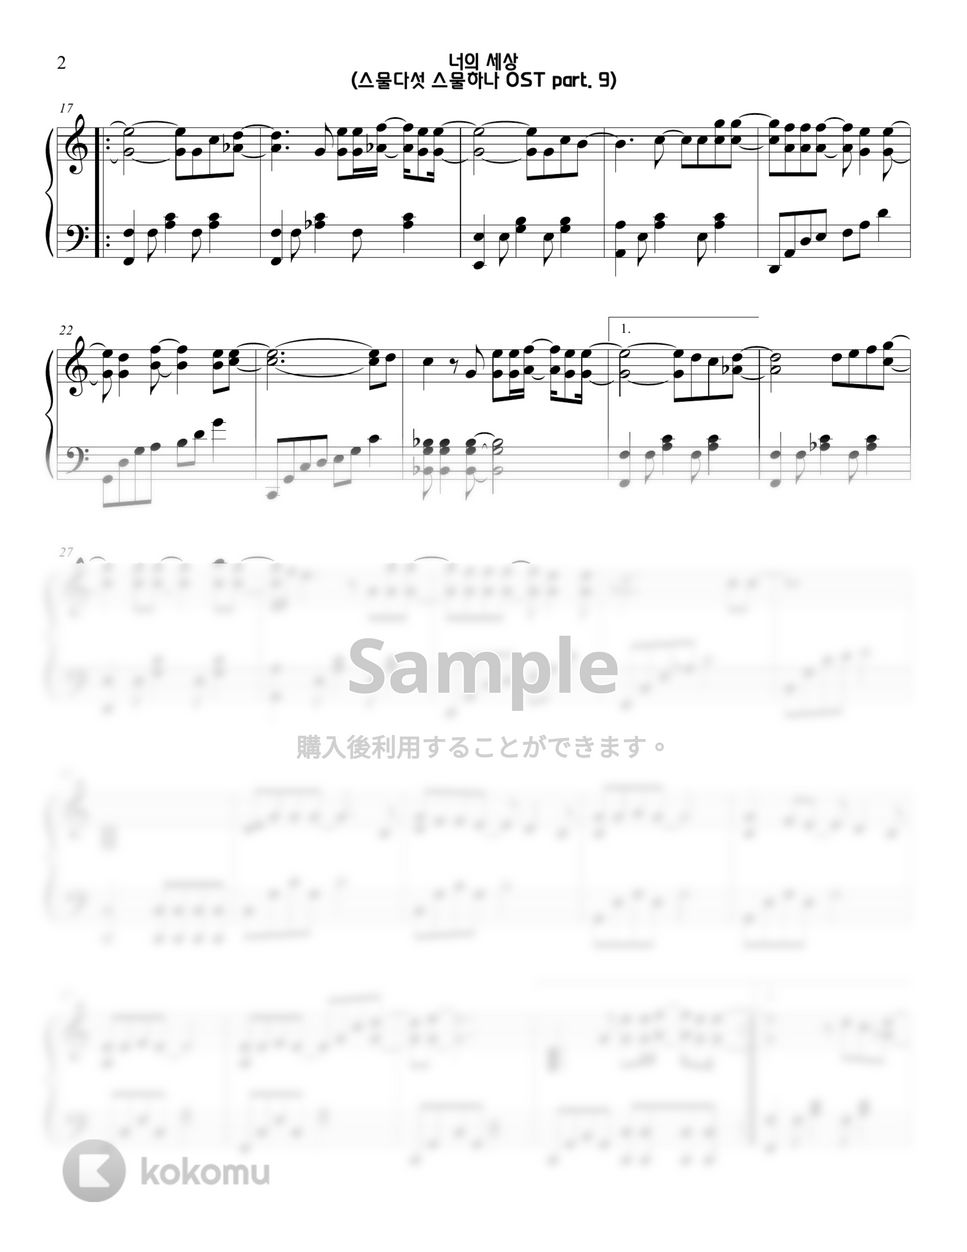 二十五、二十一(twenty-five twenty-one) - Your World(너의 세상) OST part. 7 by Sunny Fingers Piano